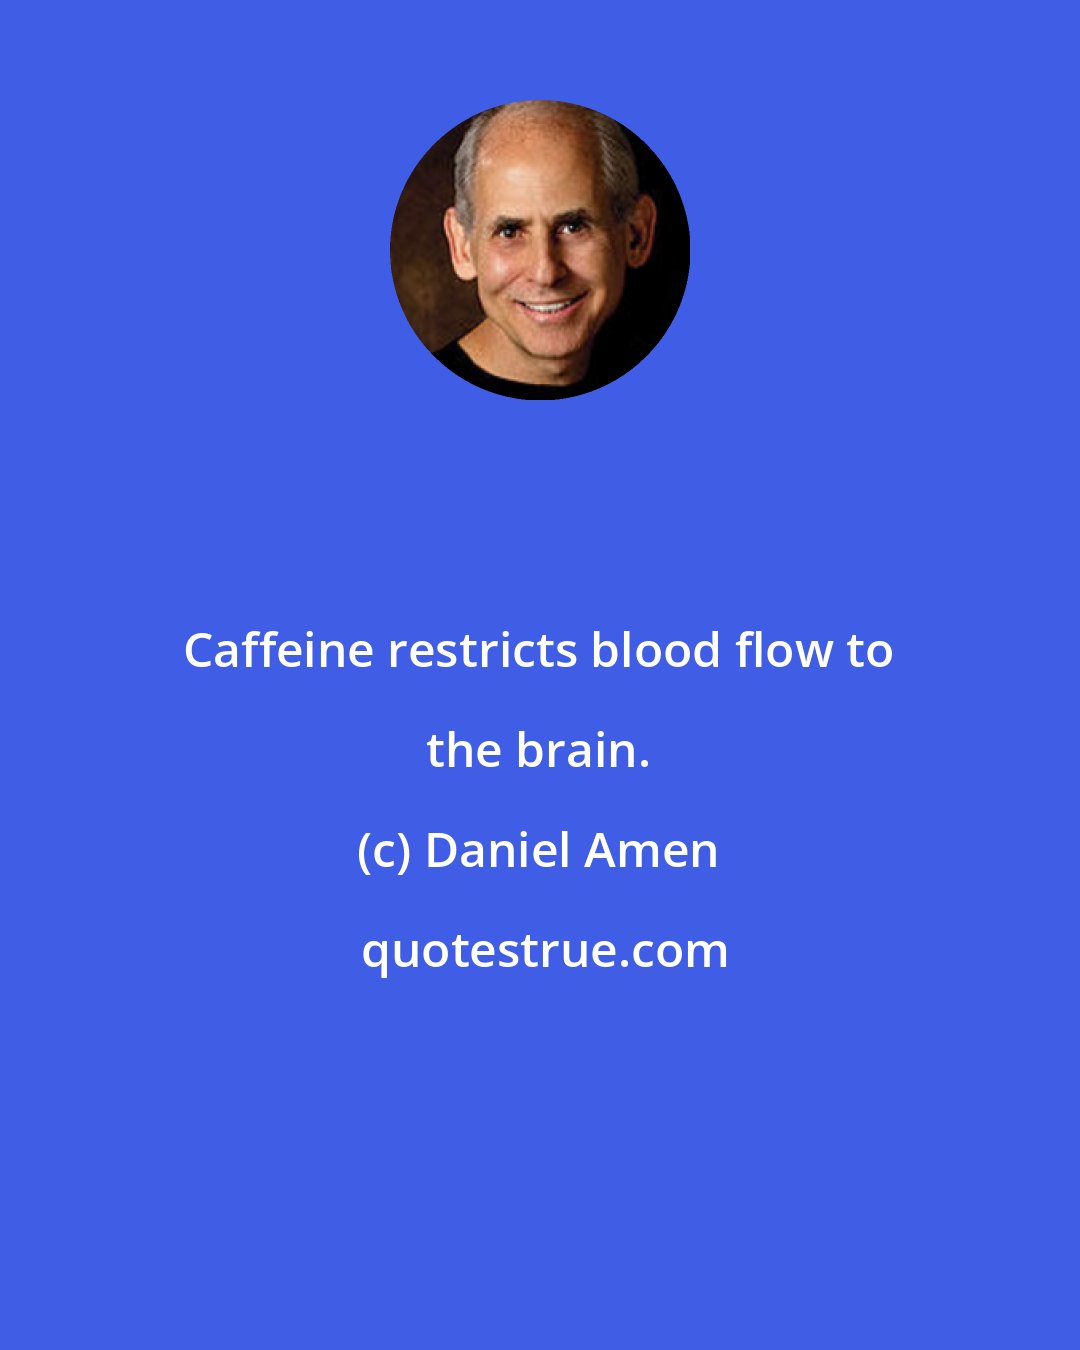 Daniel Amen: Caffeine restricts blood flow to the brain.